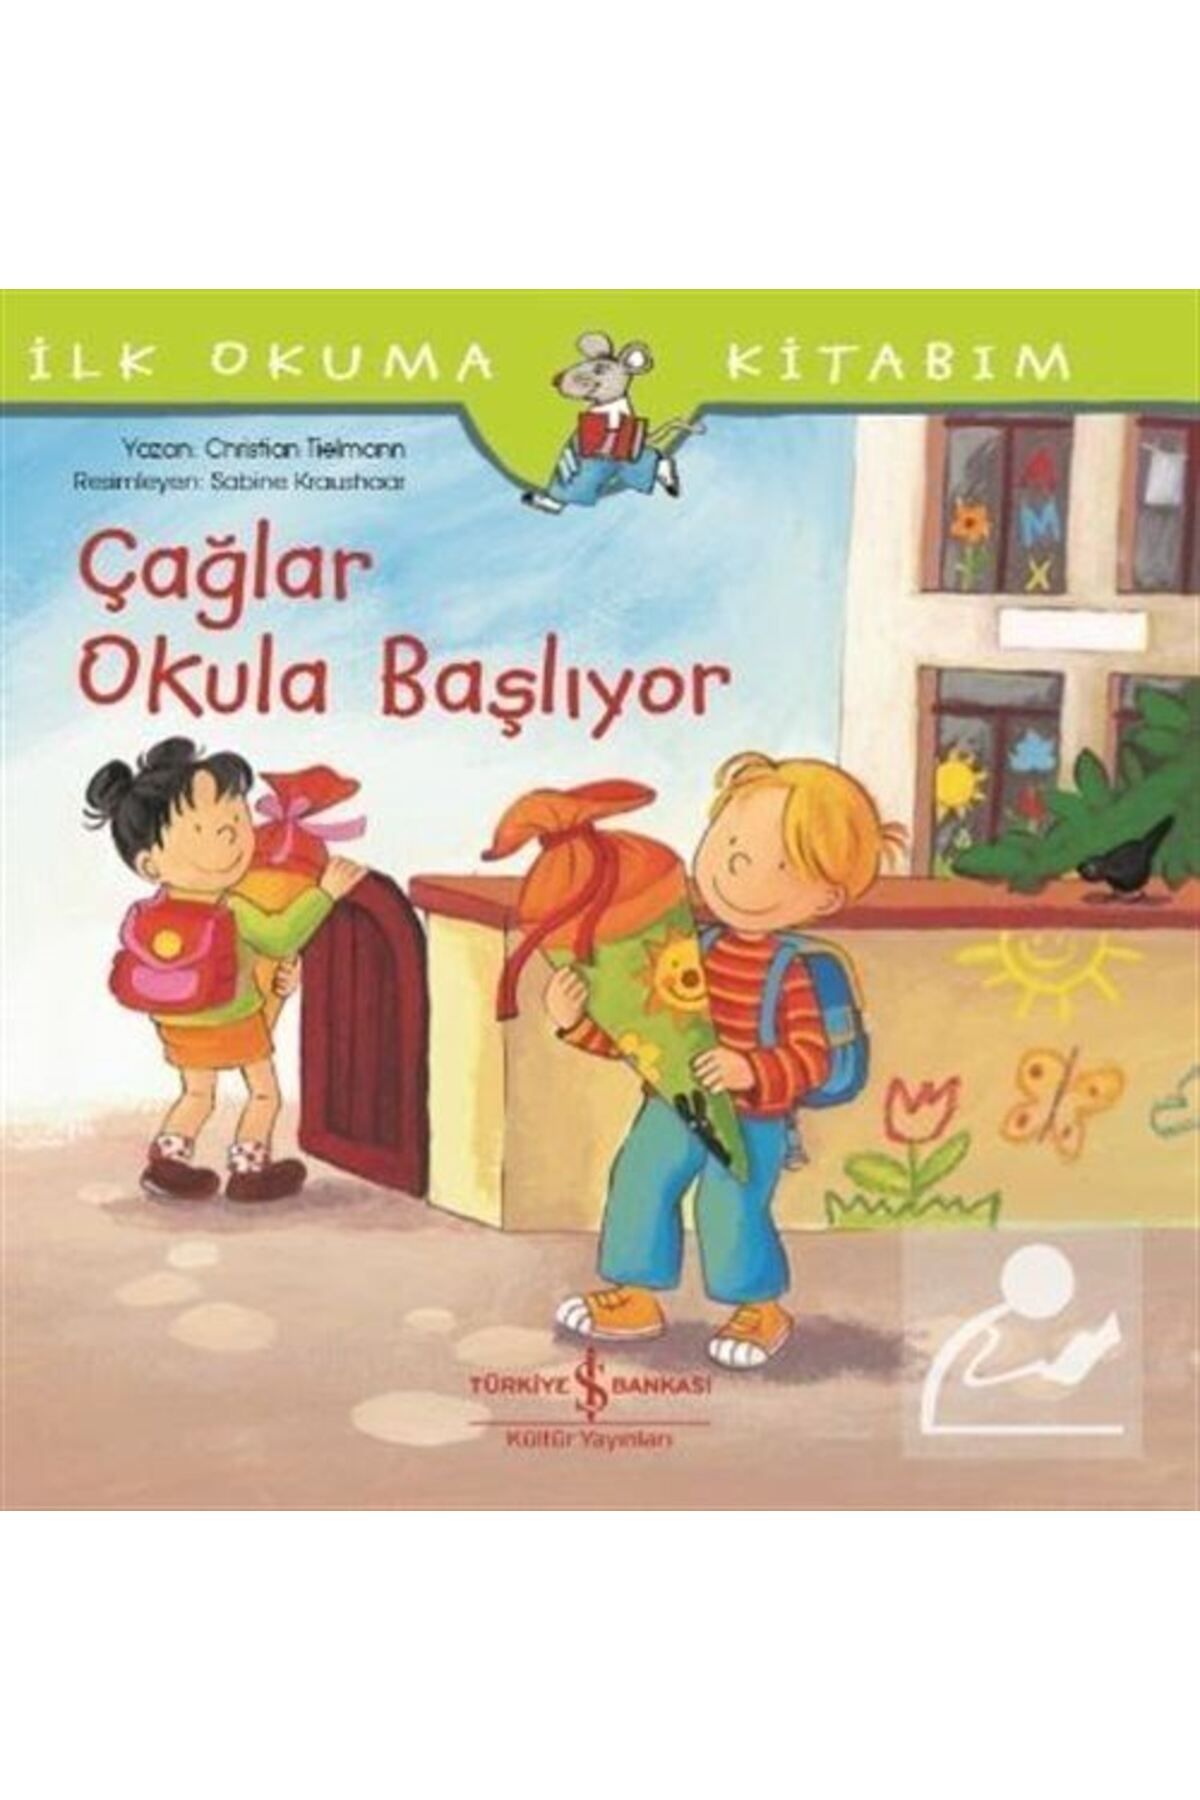 Türkiye İş Bankası Kültür Yayınları Çağlar Okula Başlıyor / Ilk Okuma Kitabım